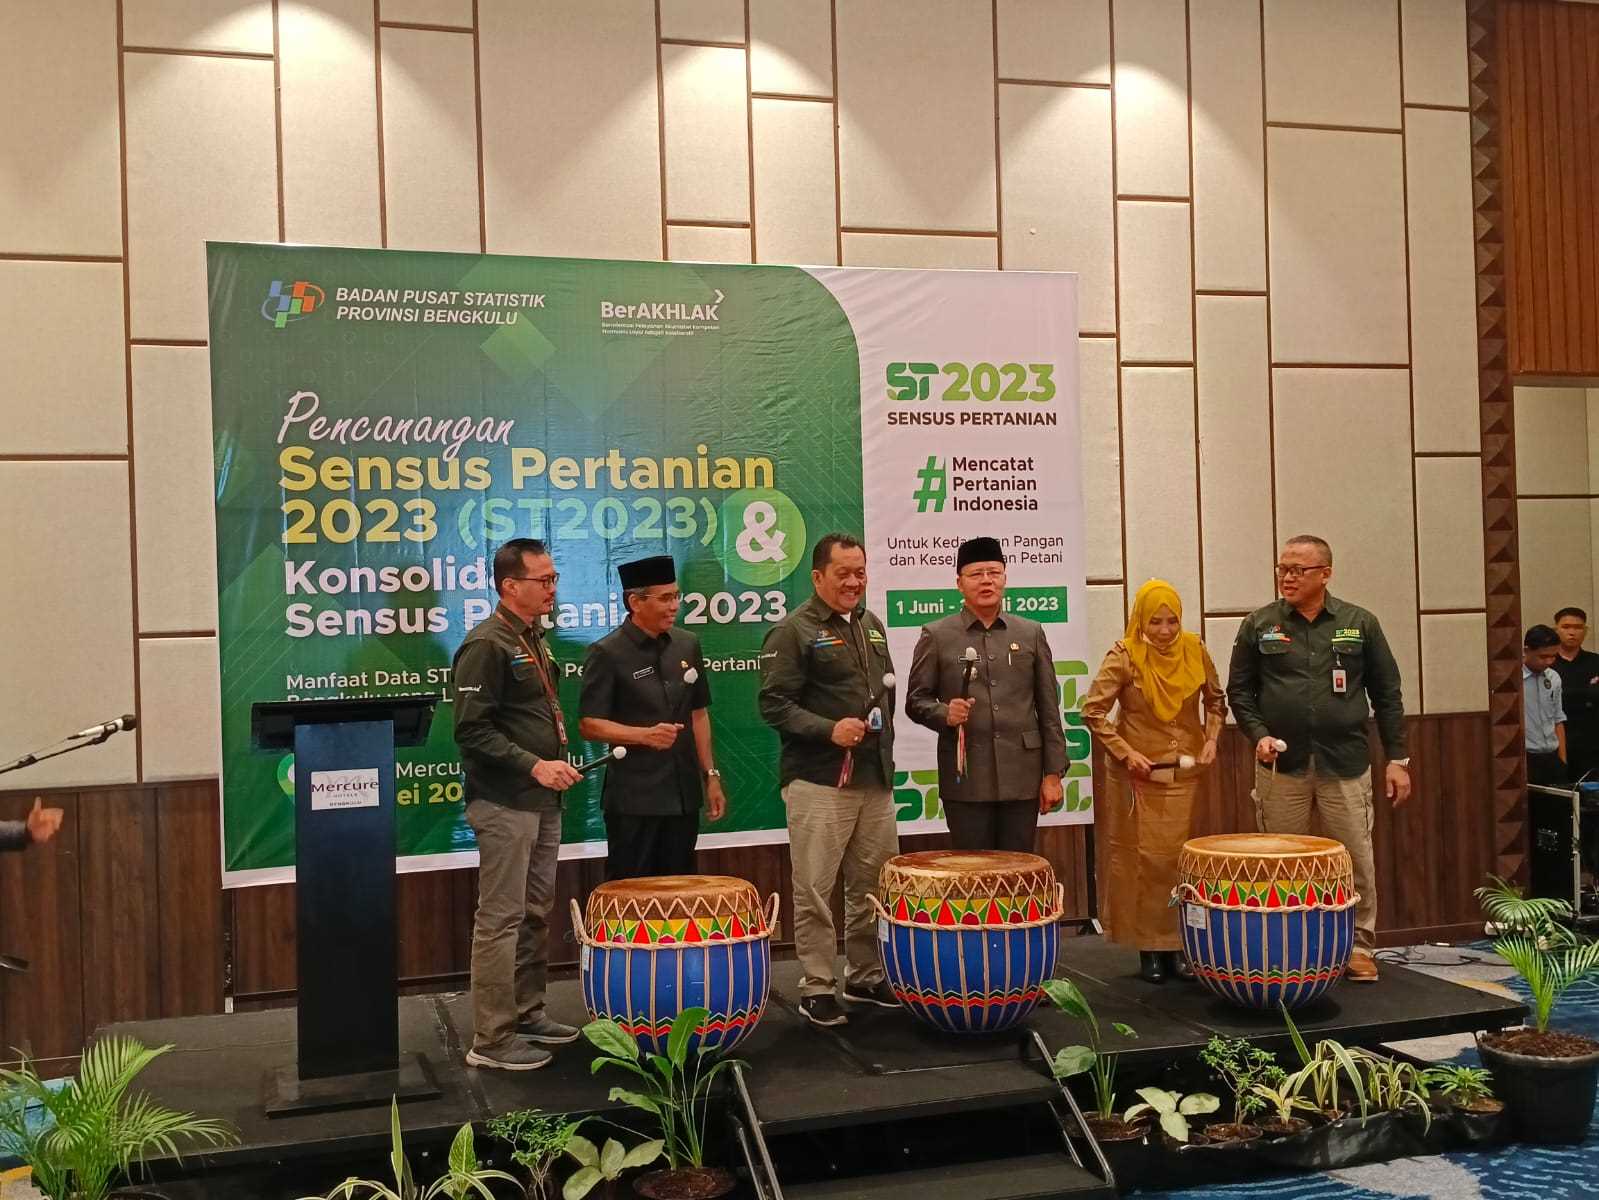 Sensus Pertanian 2023, Gubernur: Data Akurat Jadi Acuan Kebijakan untuk Provinsi Bengkulu